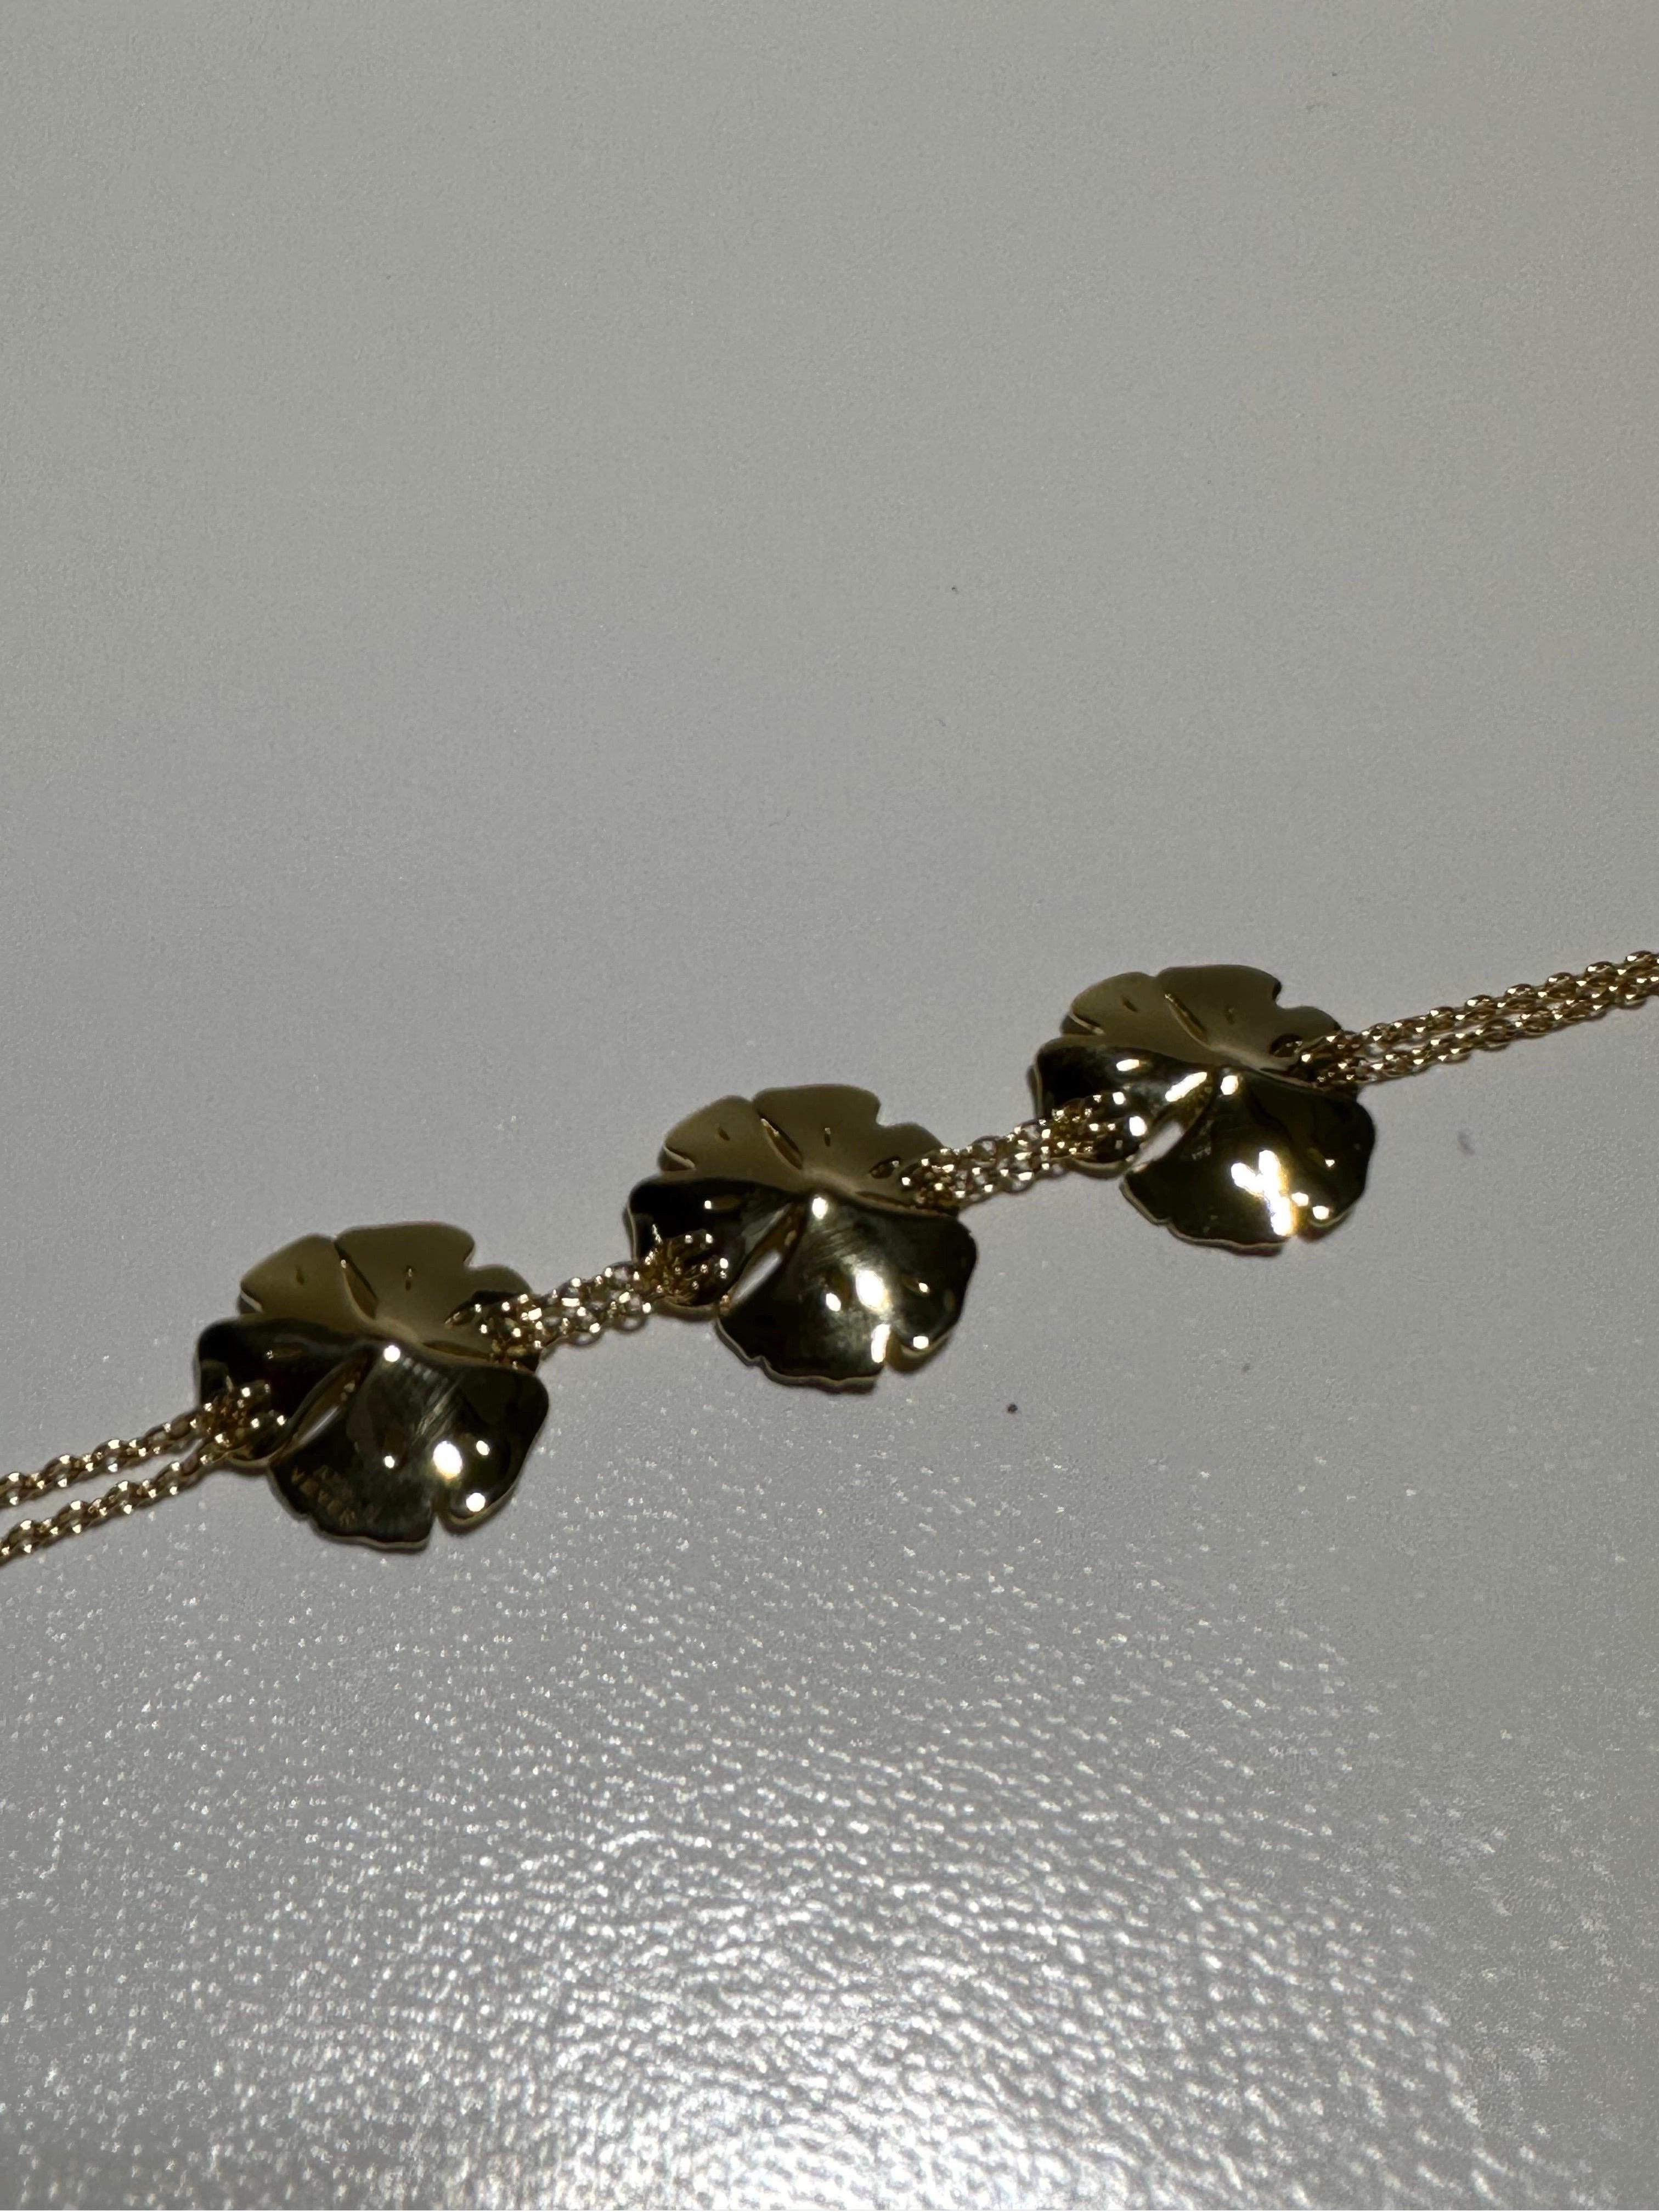 Bracelet neuf fabriqué par la maison de joaillerie française Vever. Le bracelet est en or jaune 18 carats et contient 6 diamants taillés en laboratoire (0,26 ct). 

Tout commence en 1821 à Metz, en France, lorsque Pierre-Paul Vever ouvre son premier